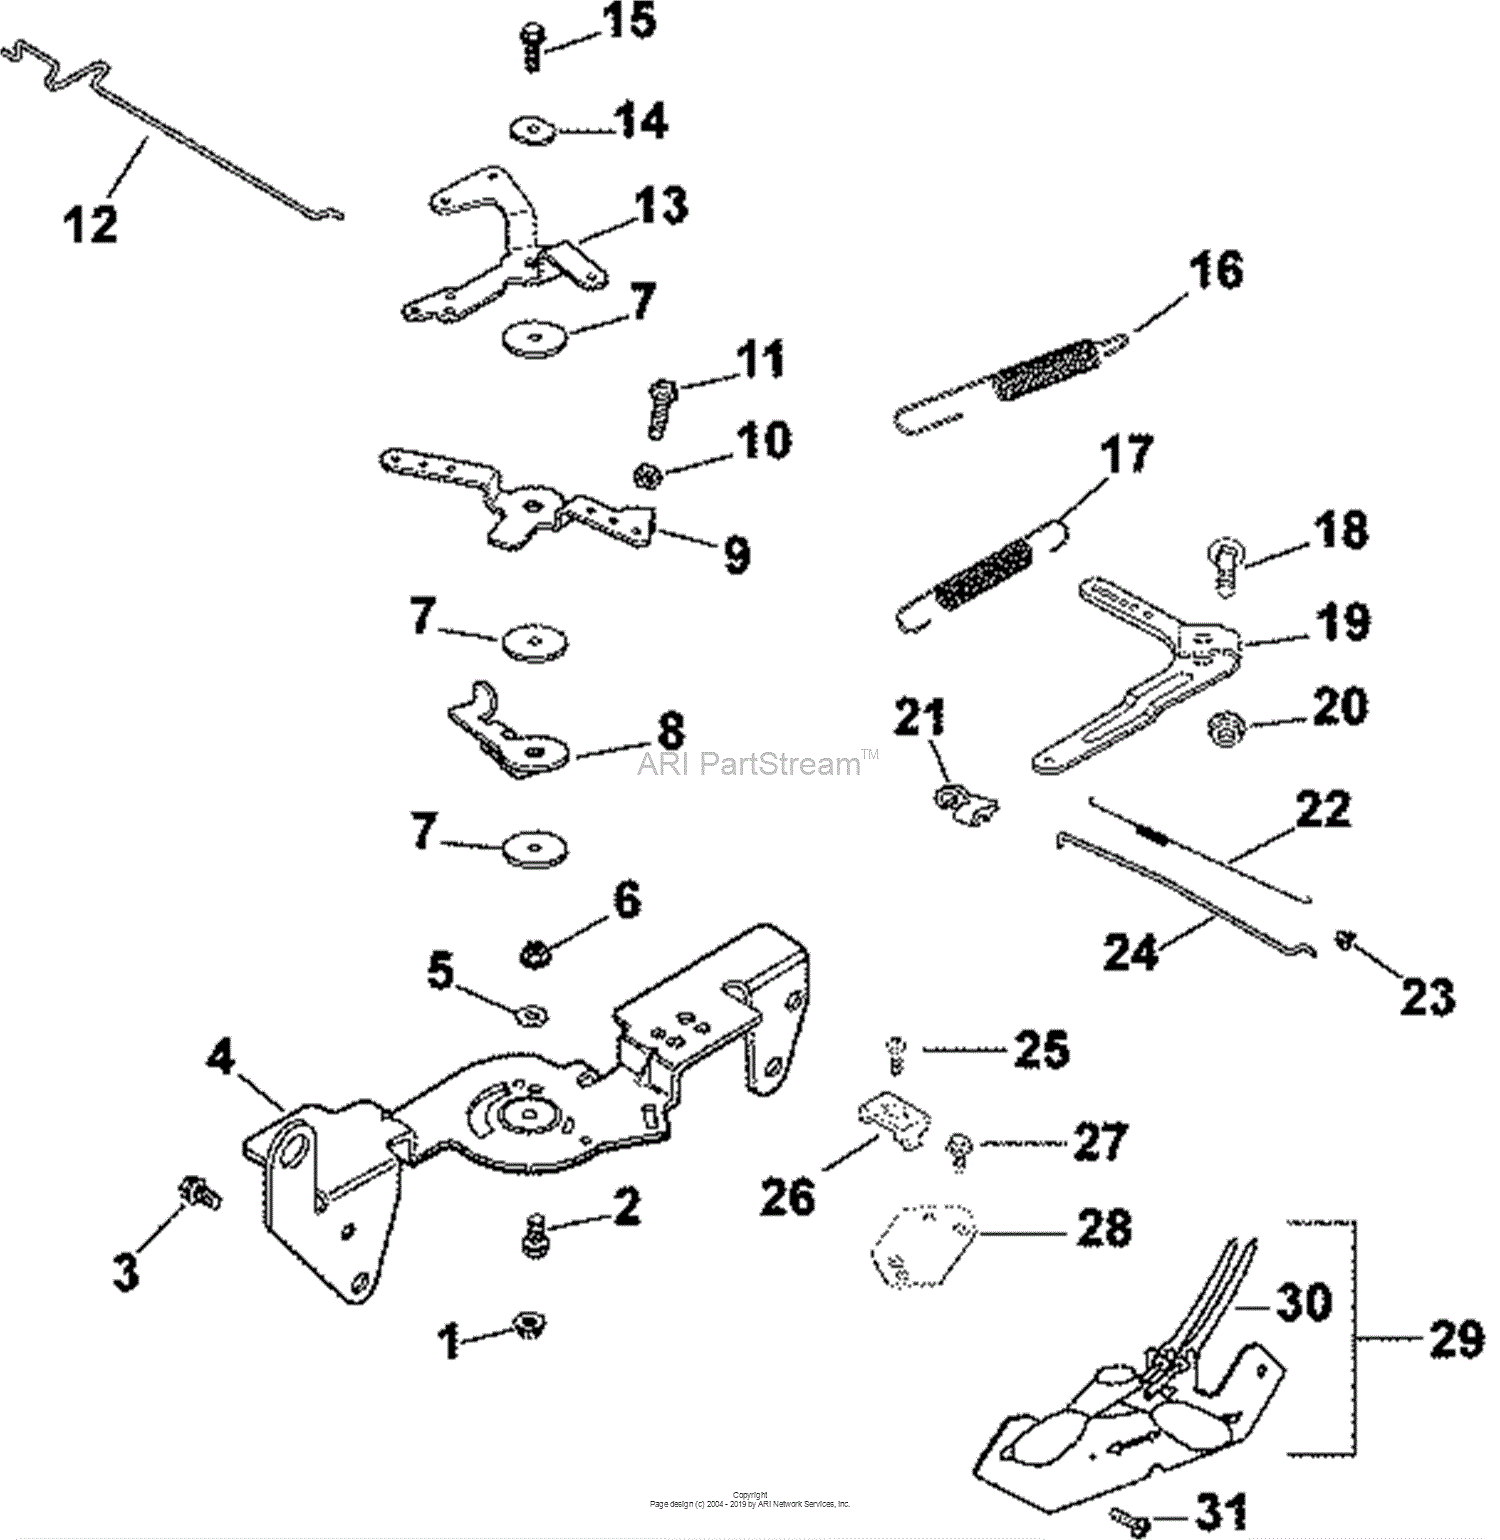 Kohler 25 Hp Carburetor Diagram 1